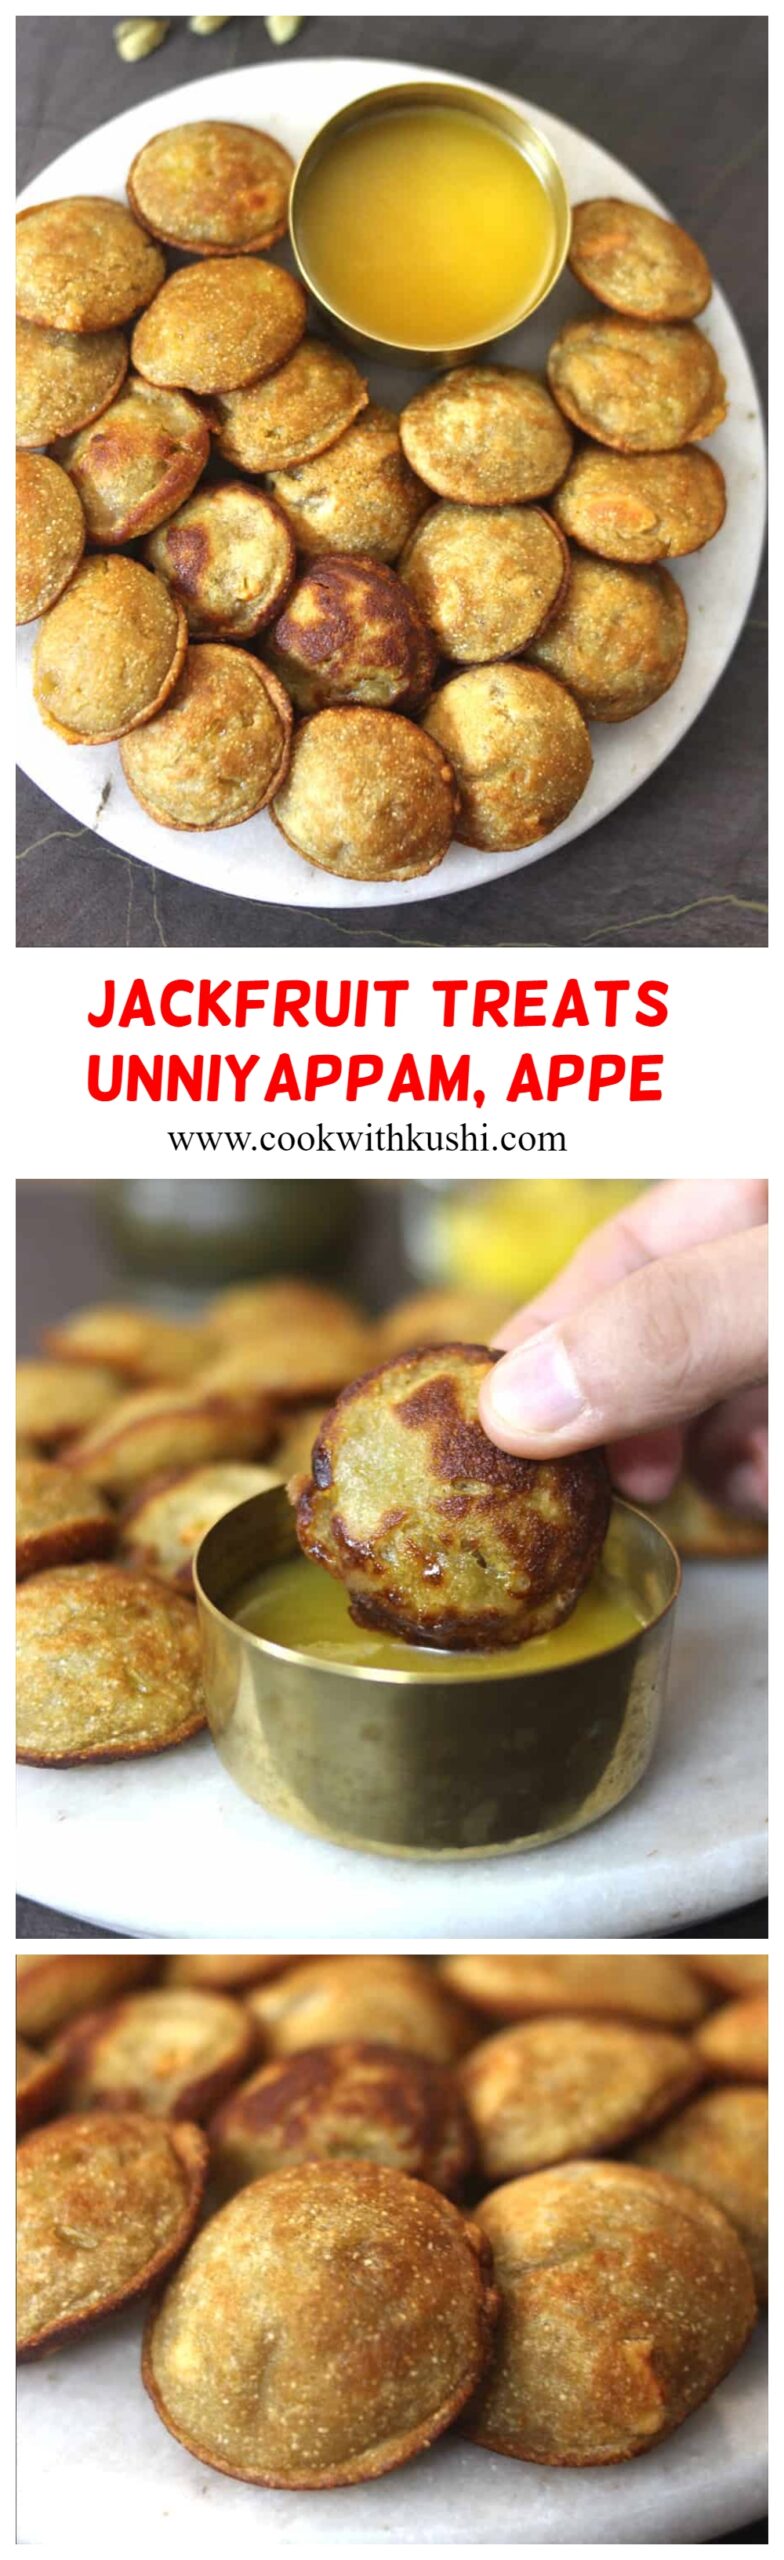 HGow to make jackfruit sweet paniyaram #appe #paniyaram #jackfruit